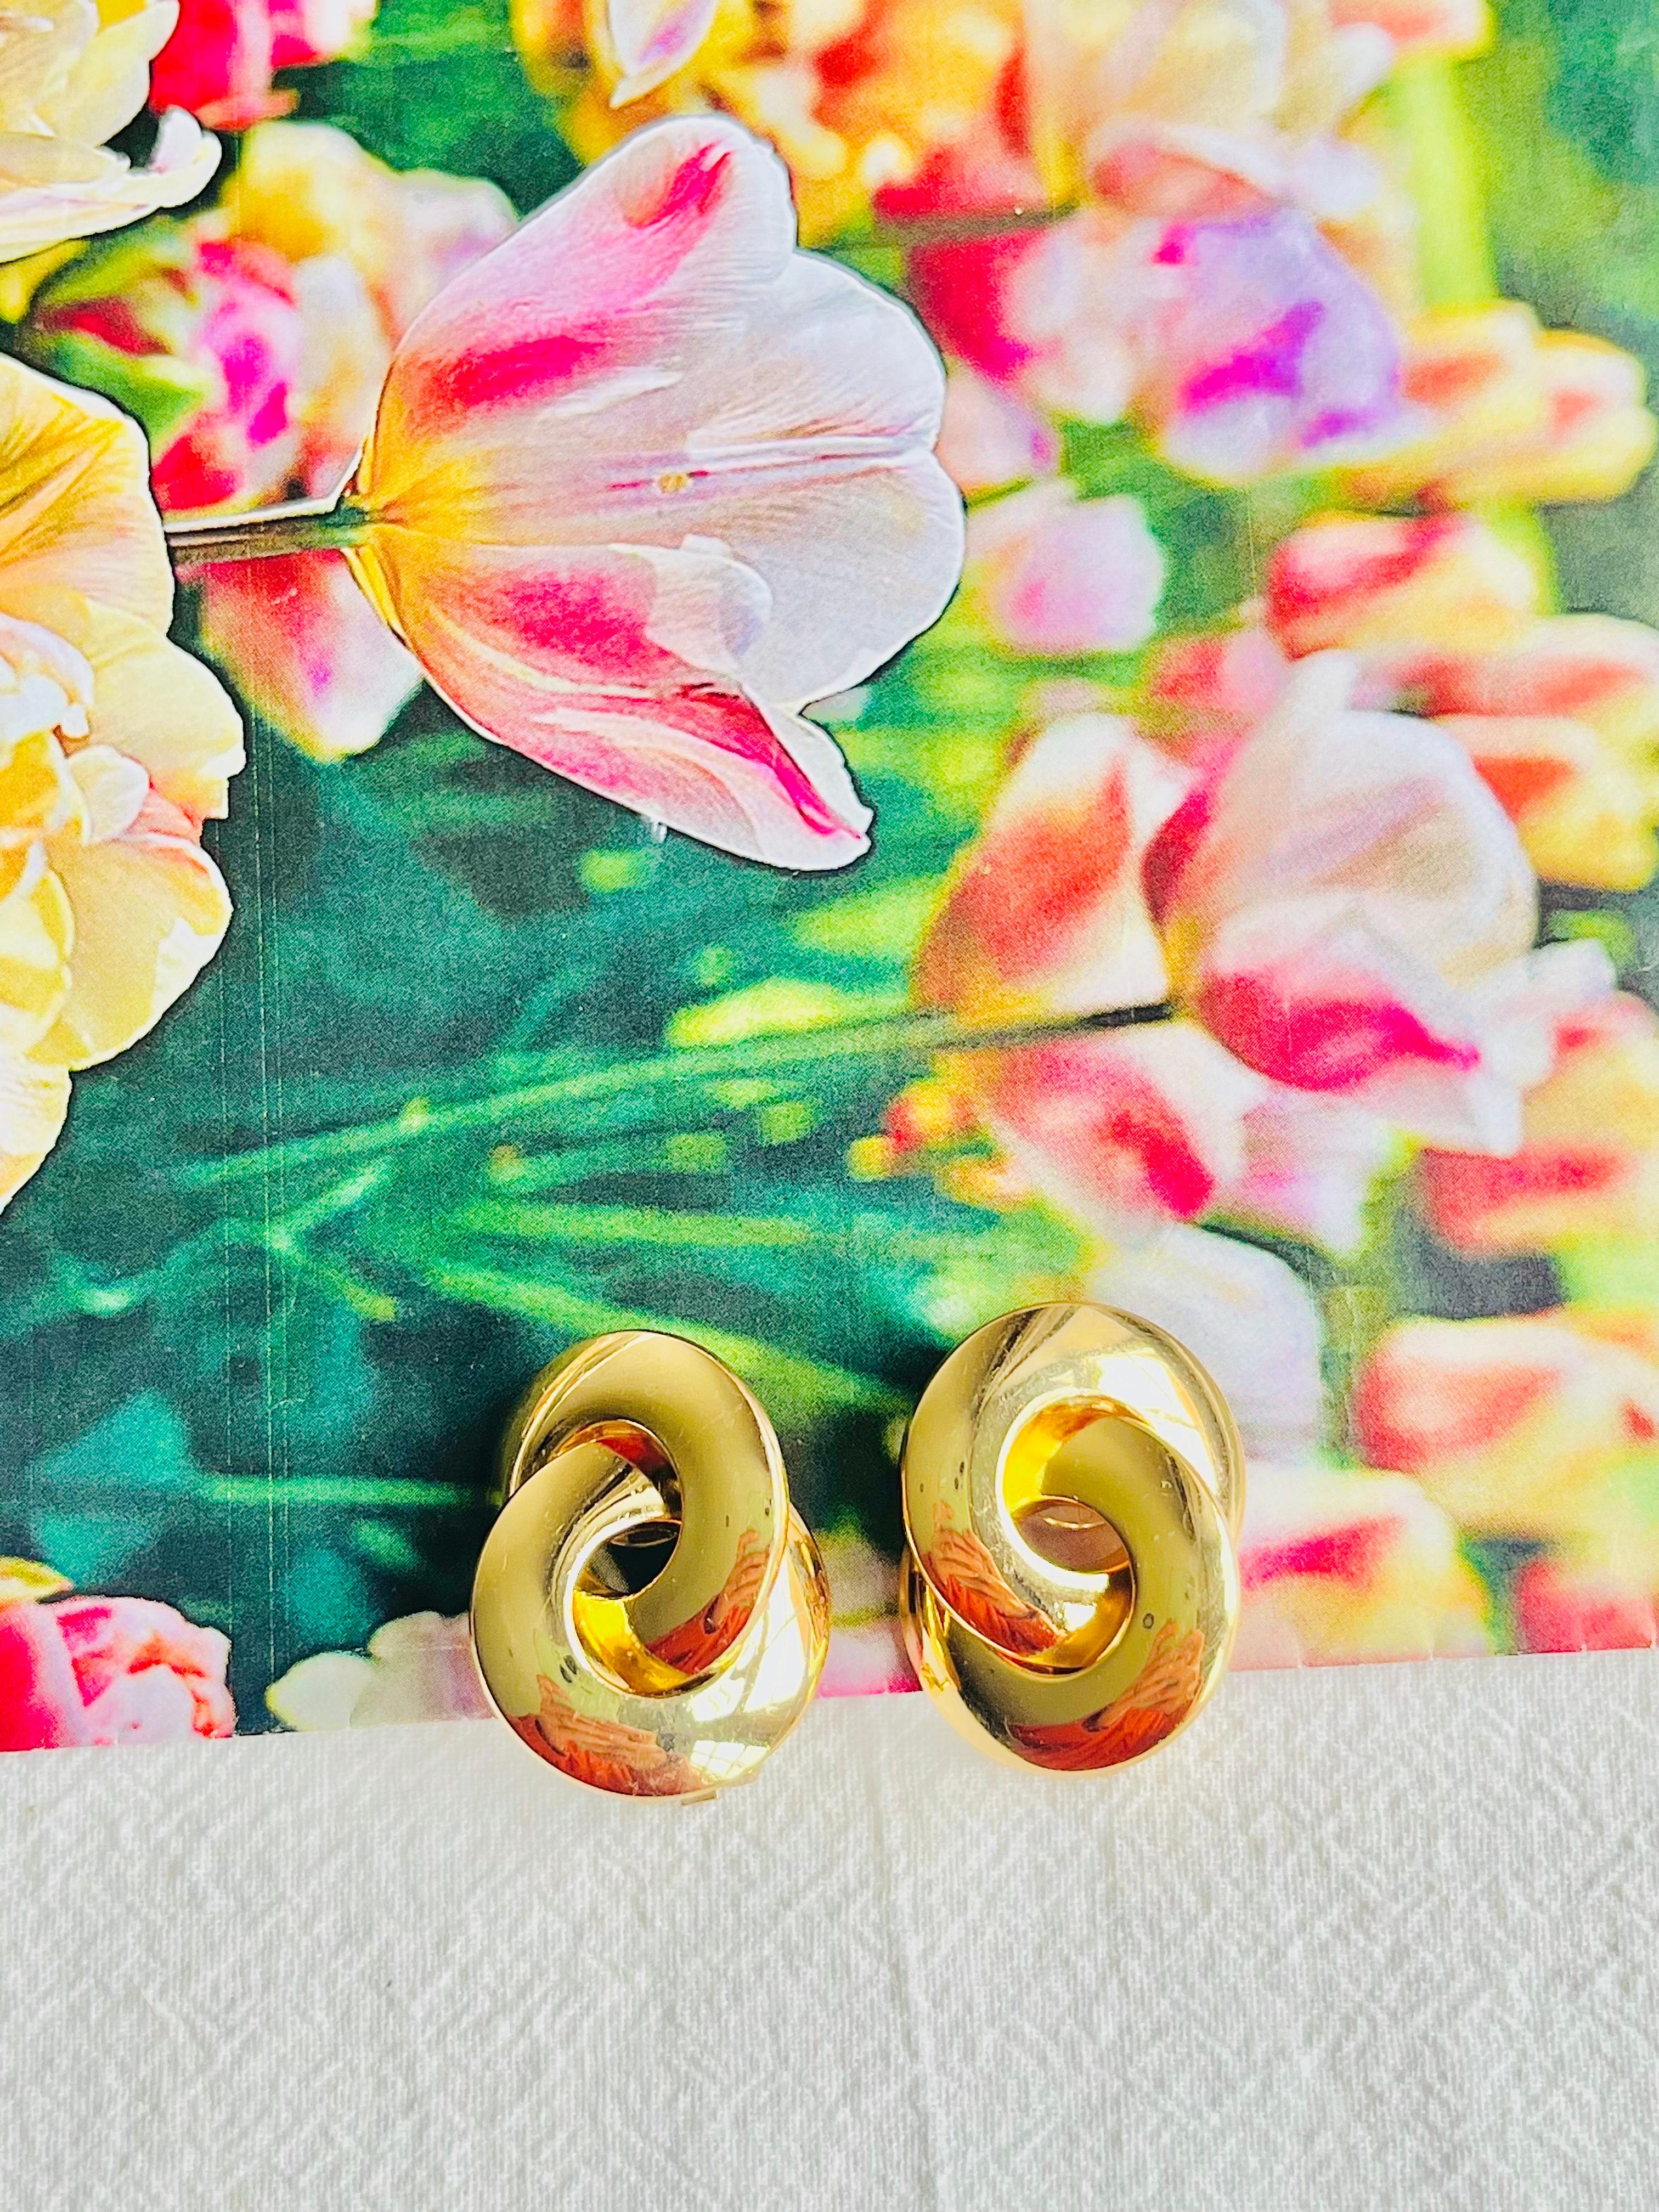 Christian Dior Vintage 1980er Jahre große Glow Twist verflochtene Knoten Clip-Ohrringe, Gold-Ton

Sehr guter Zustand. 100% echt.

Ein sehr schönes Paar Ohrringe von Chr. DIOR, signiert auf der Rückseite.

Größe: 3,0*2,4 cm.

Gewicht: 8 g/Stück.

_ _